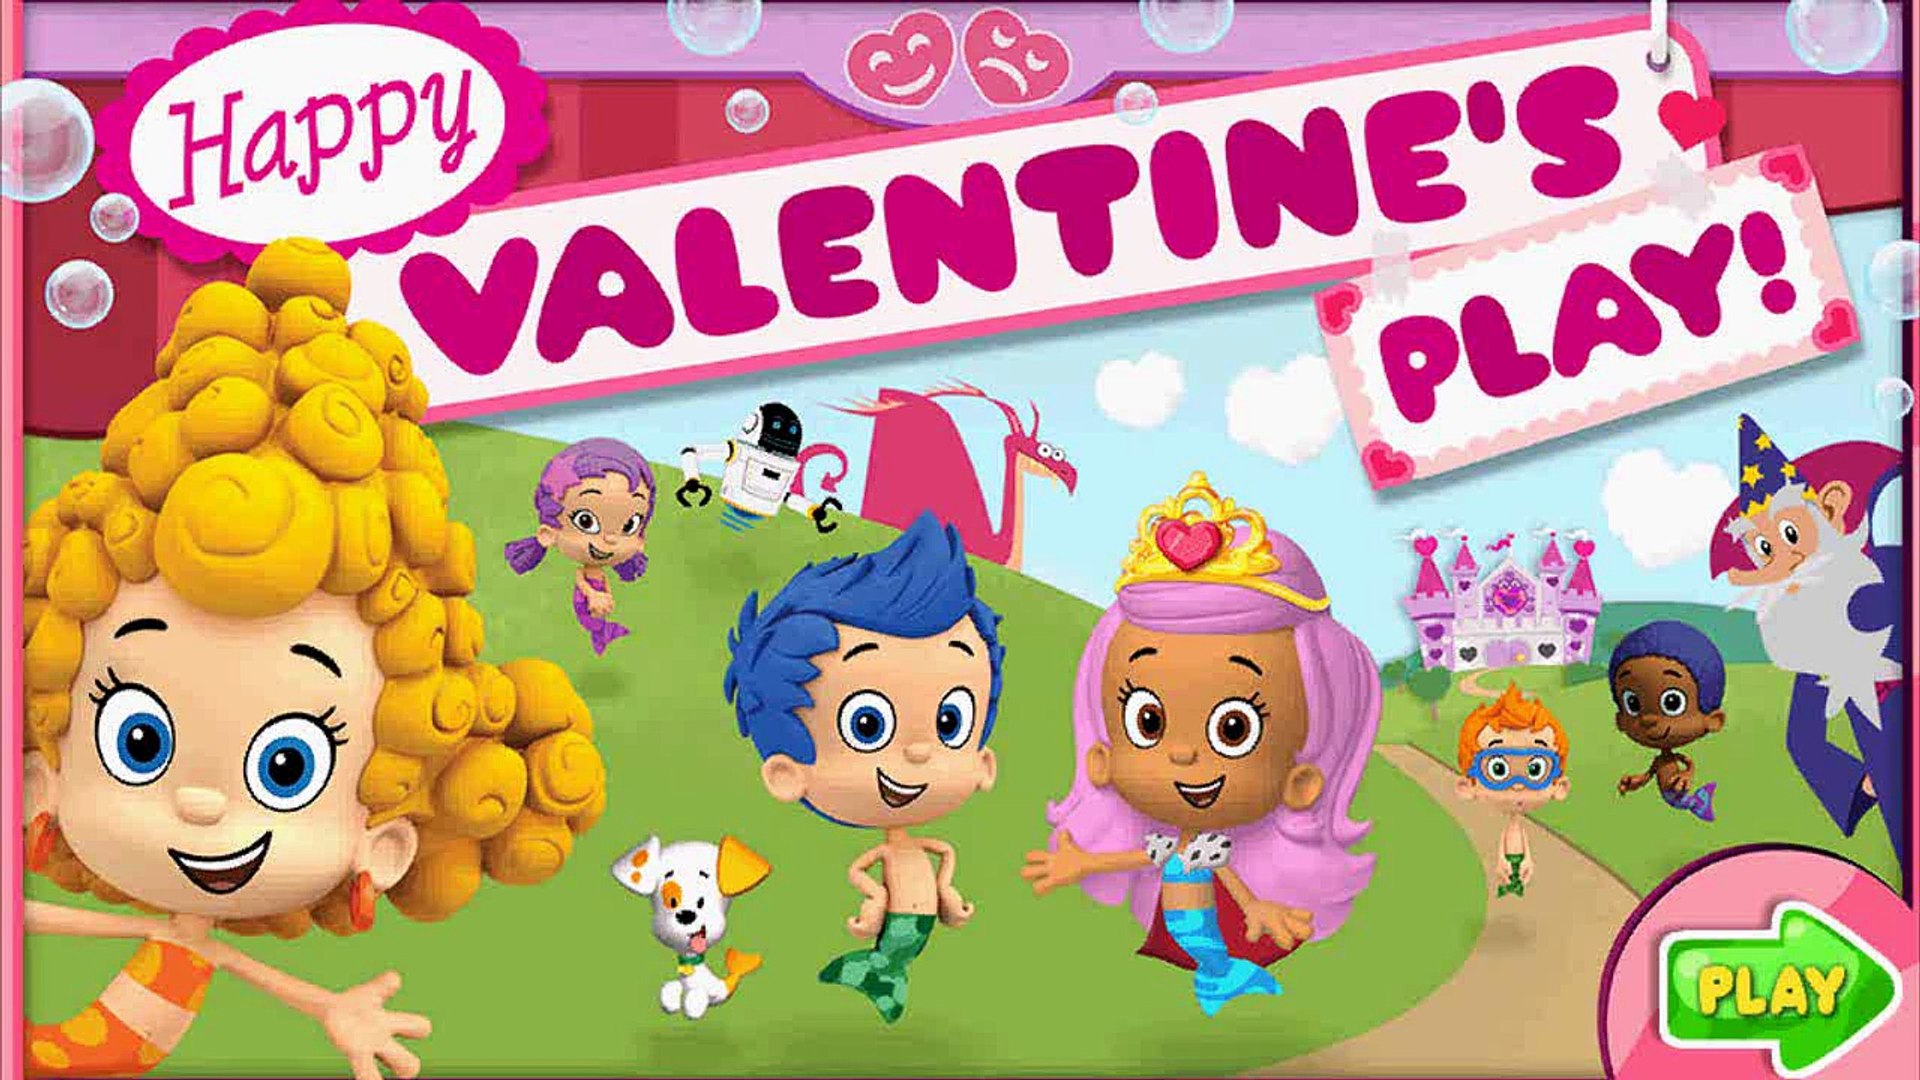 Bubble Guppies - Happy Valentine's - Kids Game Movie